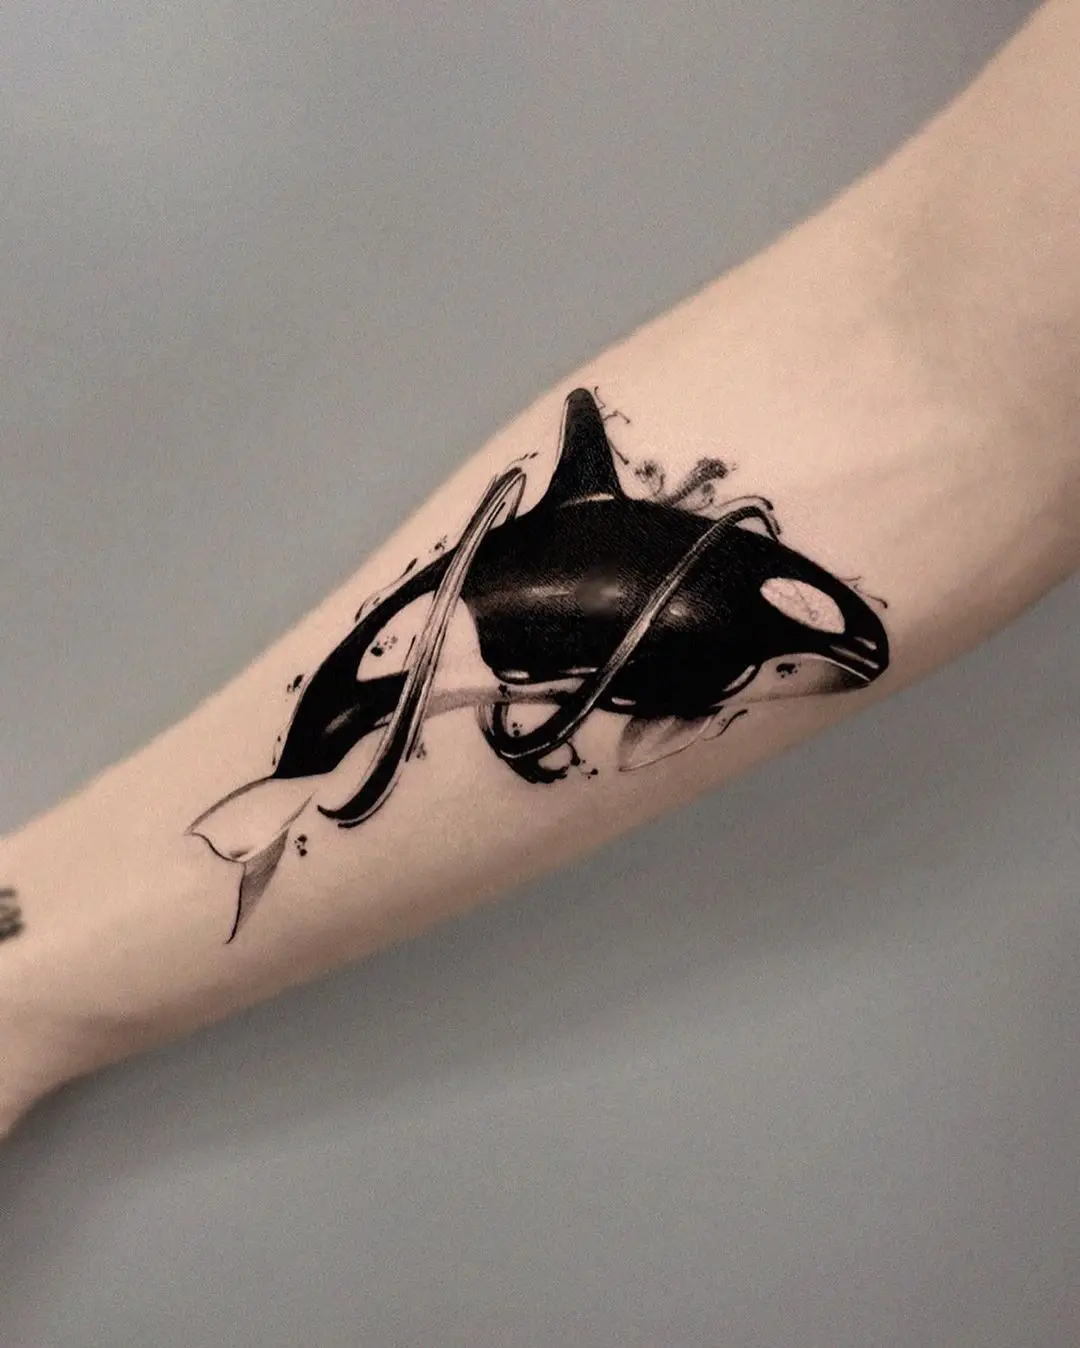 Orca whale tattoo by tattooist hoji